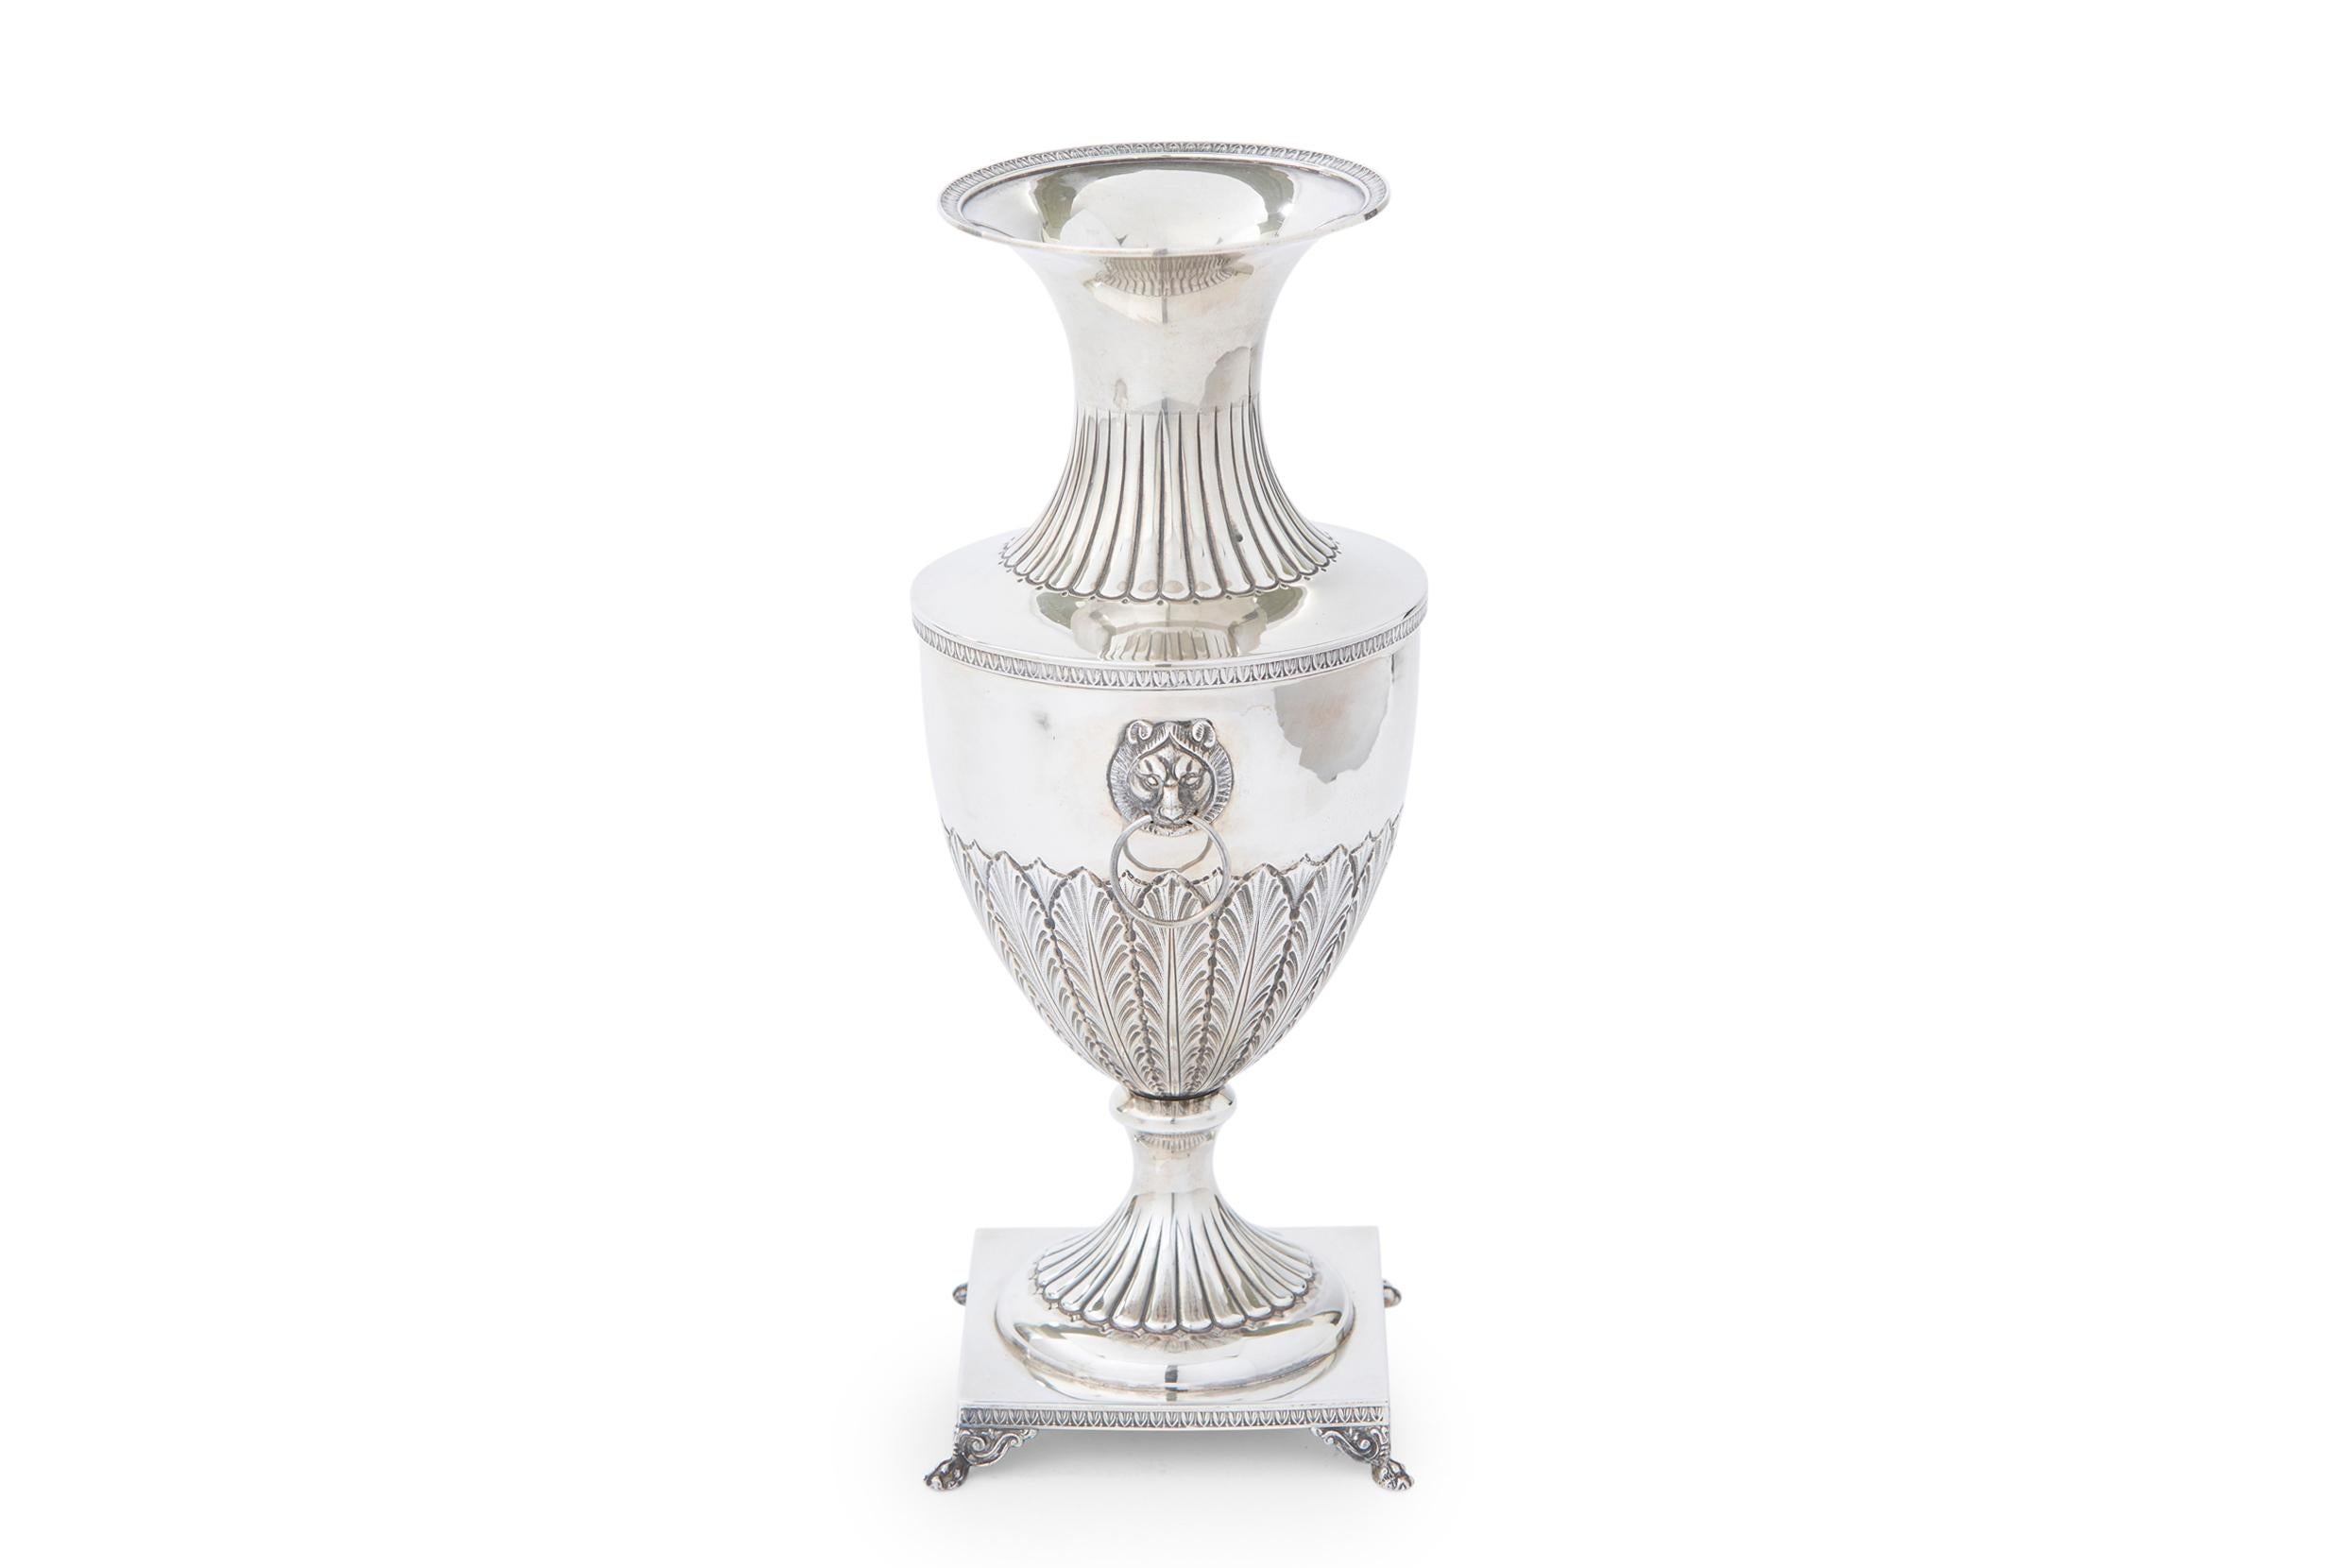 Sterling Silber fußte dekorative Vase / Stück mit Löwenköpfen Seite Griffe und äußere Design-Details ruht auf quadratischen Sockel. Das Sterling-Stück ist in hervorragendem antiken Zustand. Leichte alters- und gebrauchsbedingte Abnutzung.